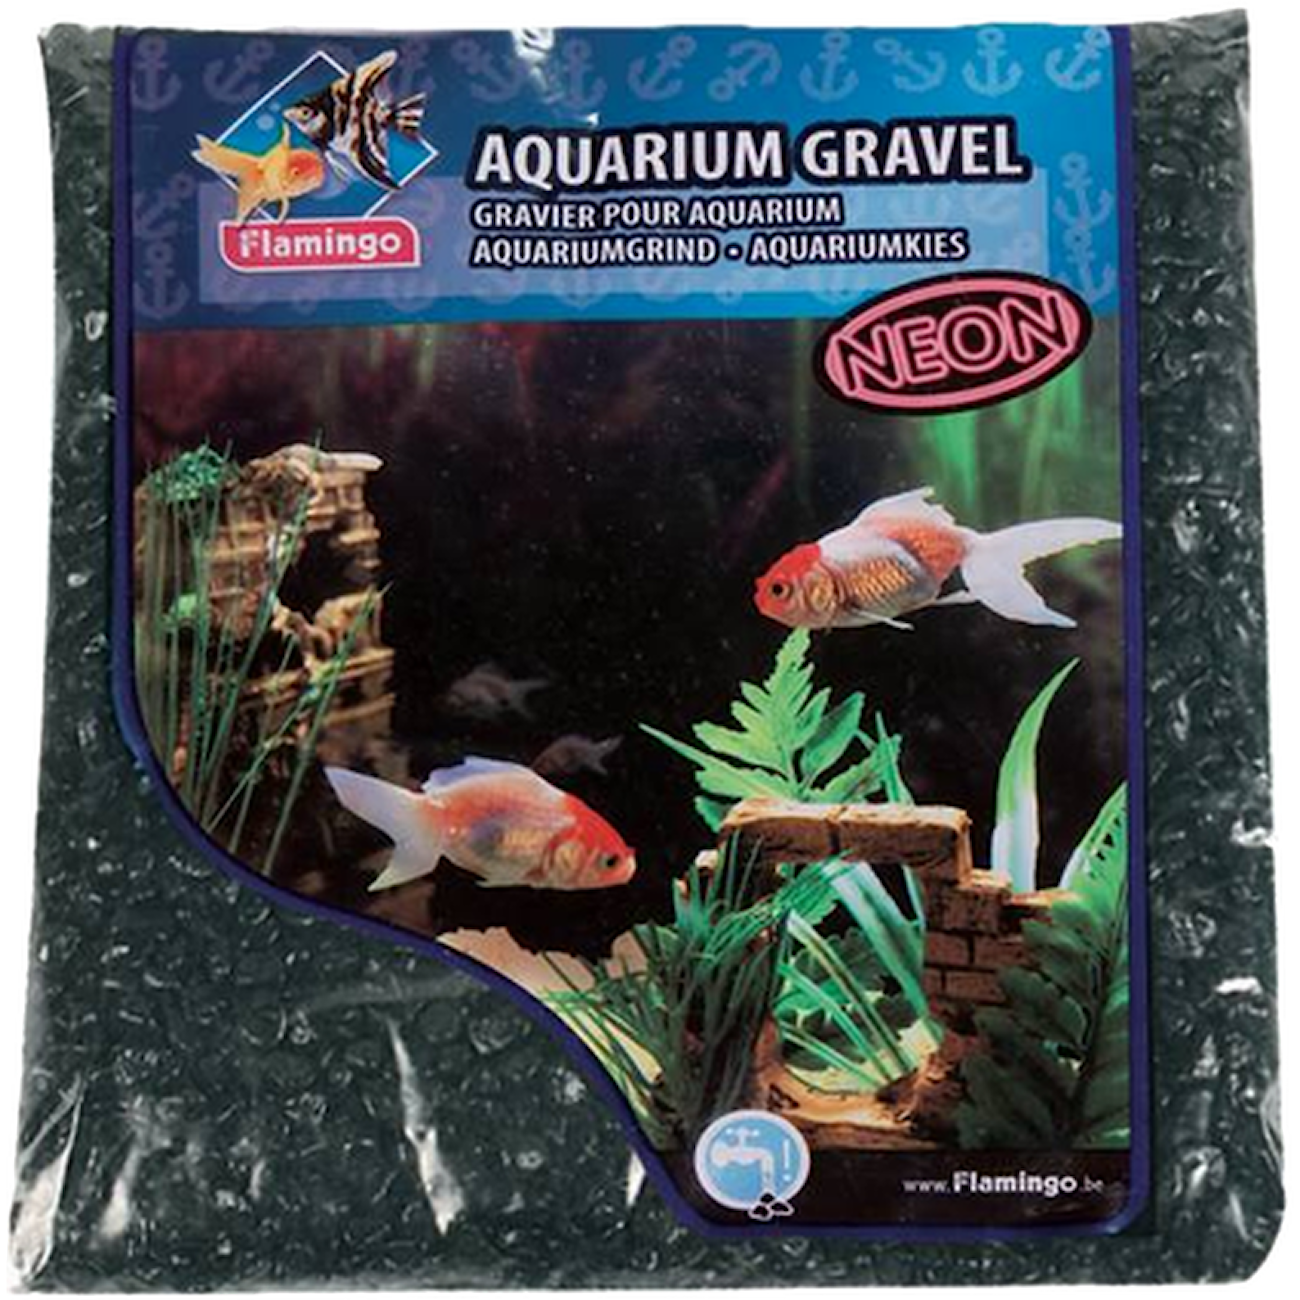 Aquarium Gravel Black Neon 1 kg